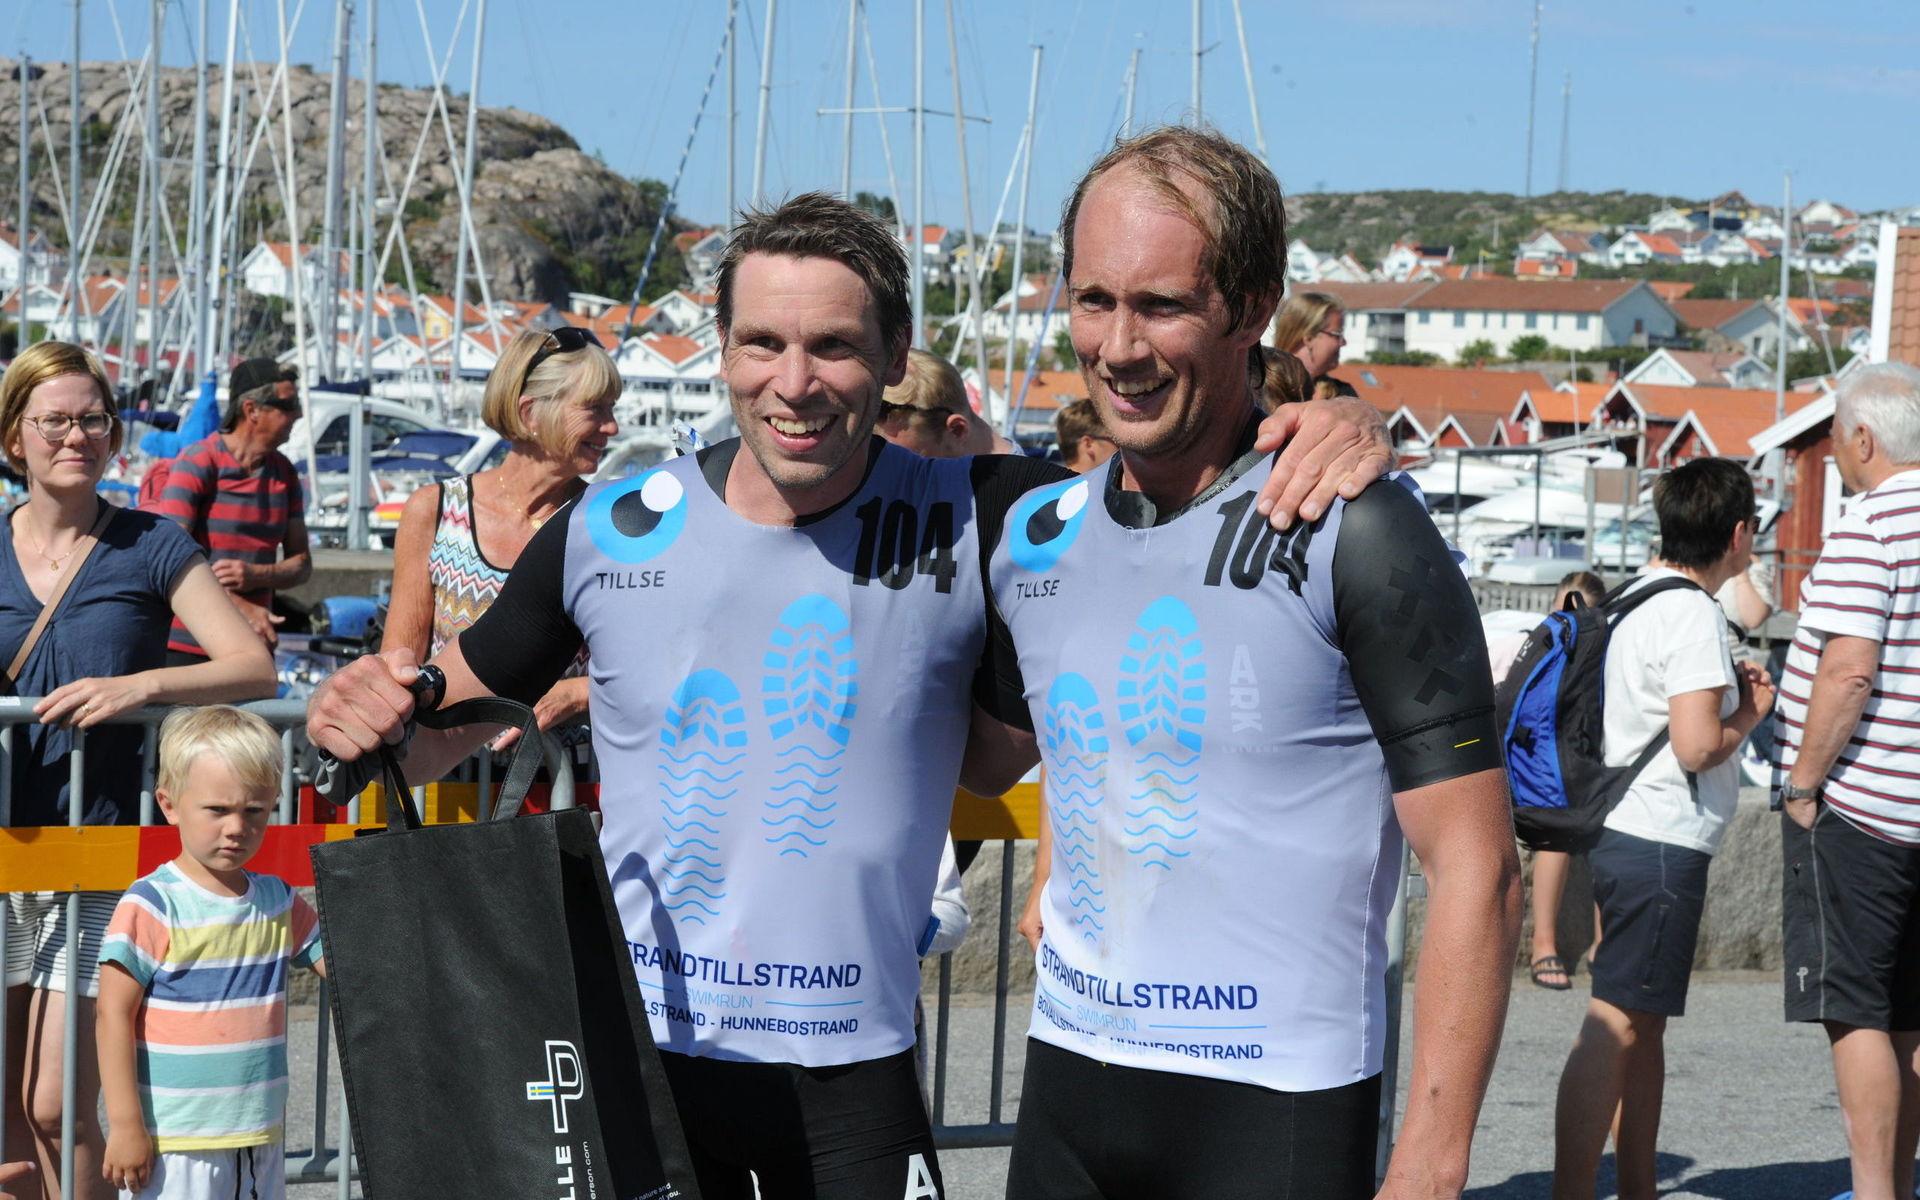 Daniel Hansson och Gustav Rhedin tog sig in på tiden 1:25:08 och vann därmed årets upplaga av Strand till strand.